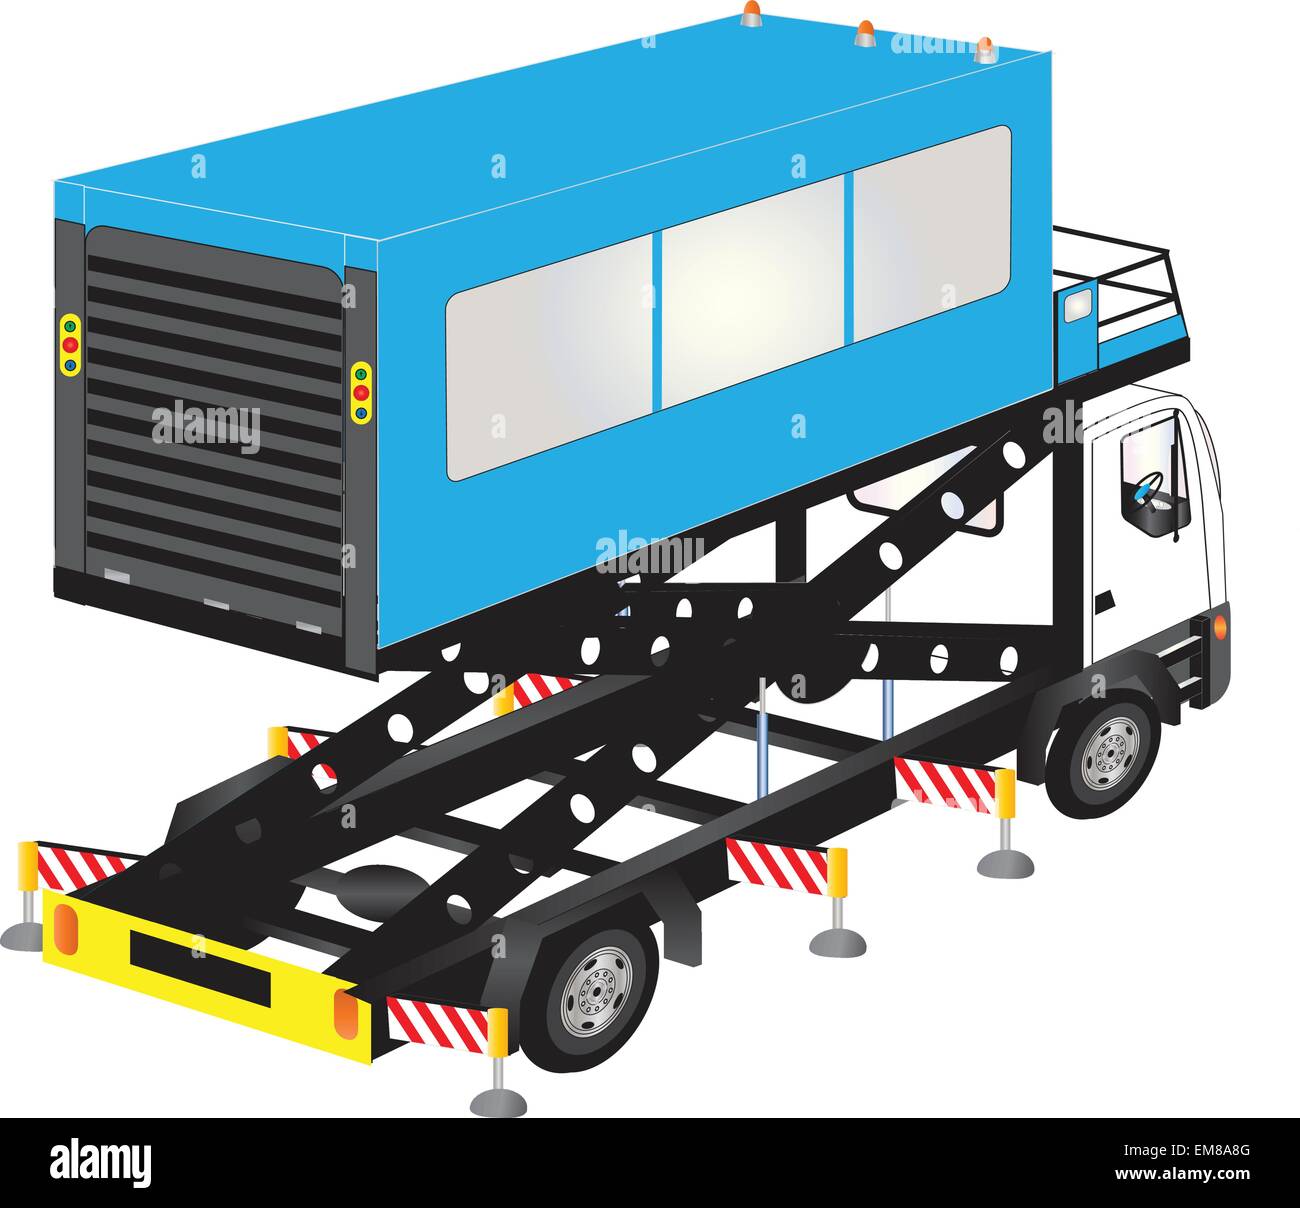 Eine Vektor-Illustration eine blaue Flughafen Ambulift High Lift Truck zum Heben verwendet behinderte Passagiere in Flugzeugen, isoliert auf weiss Stock Vektor